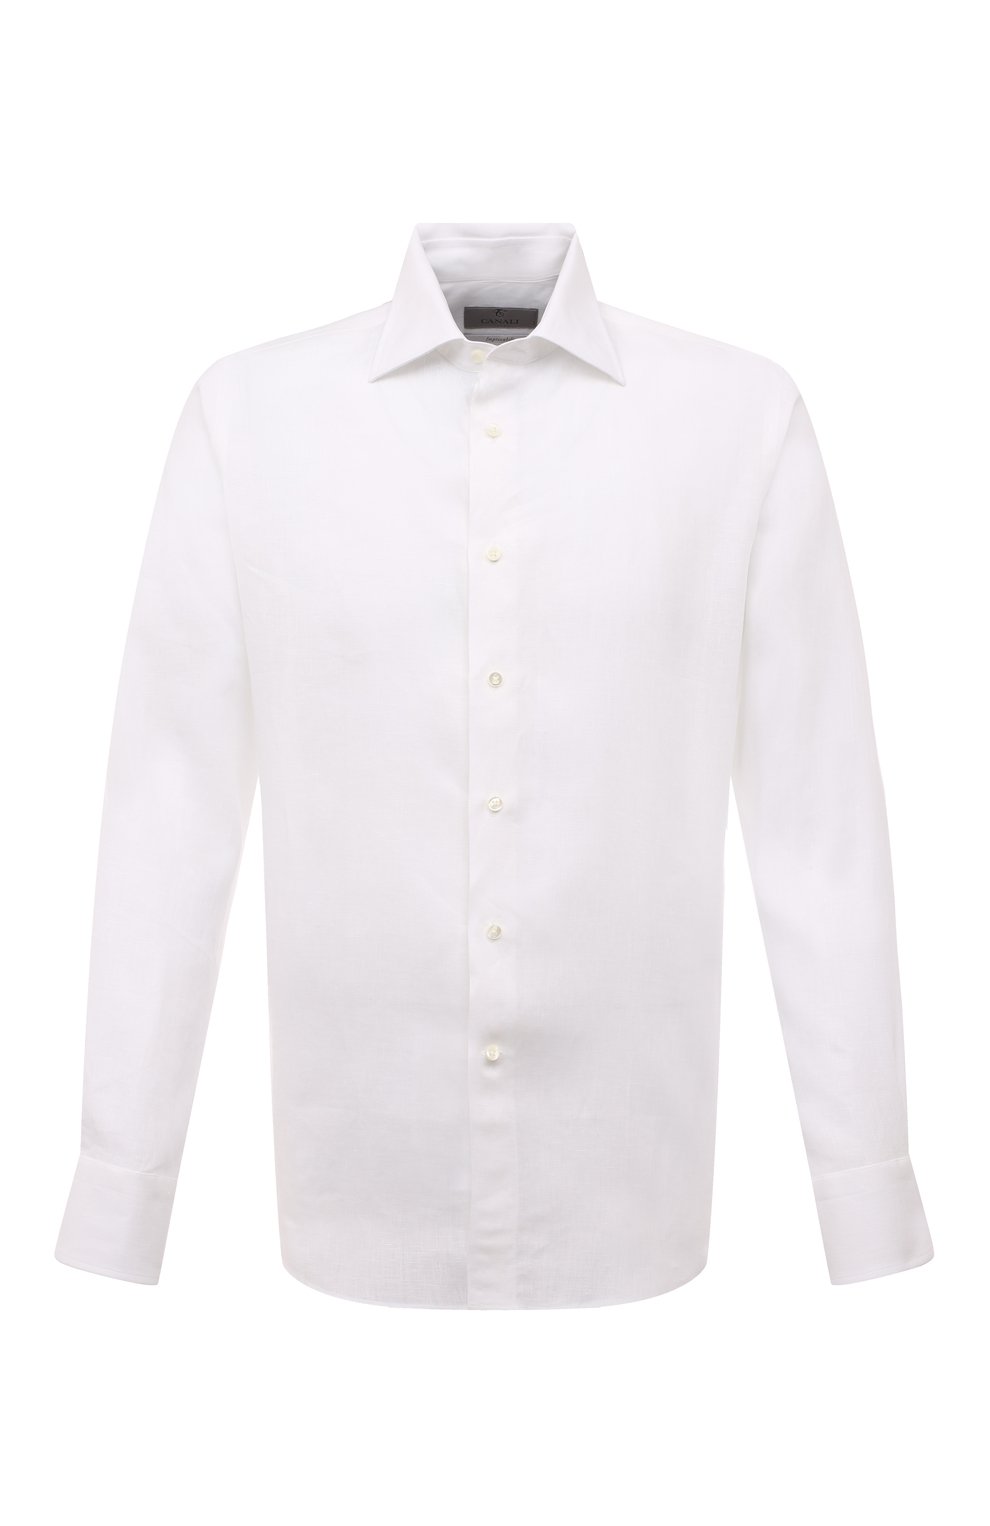 Рубашки Canali, Льняная рубашка Canali, Италия, Белый, Лен: 100%;, 13188469  - купить